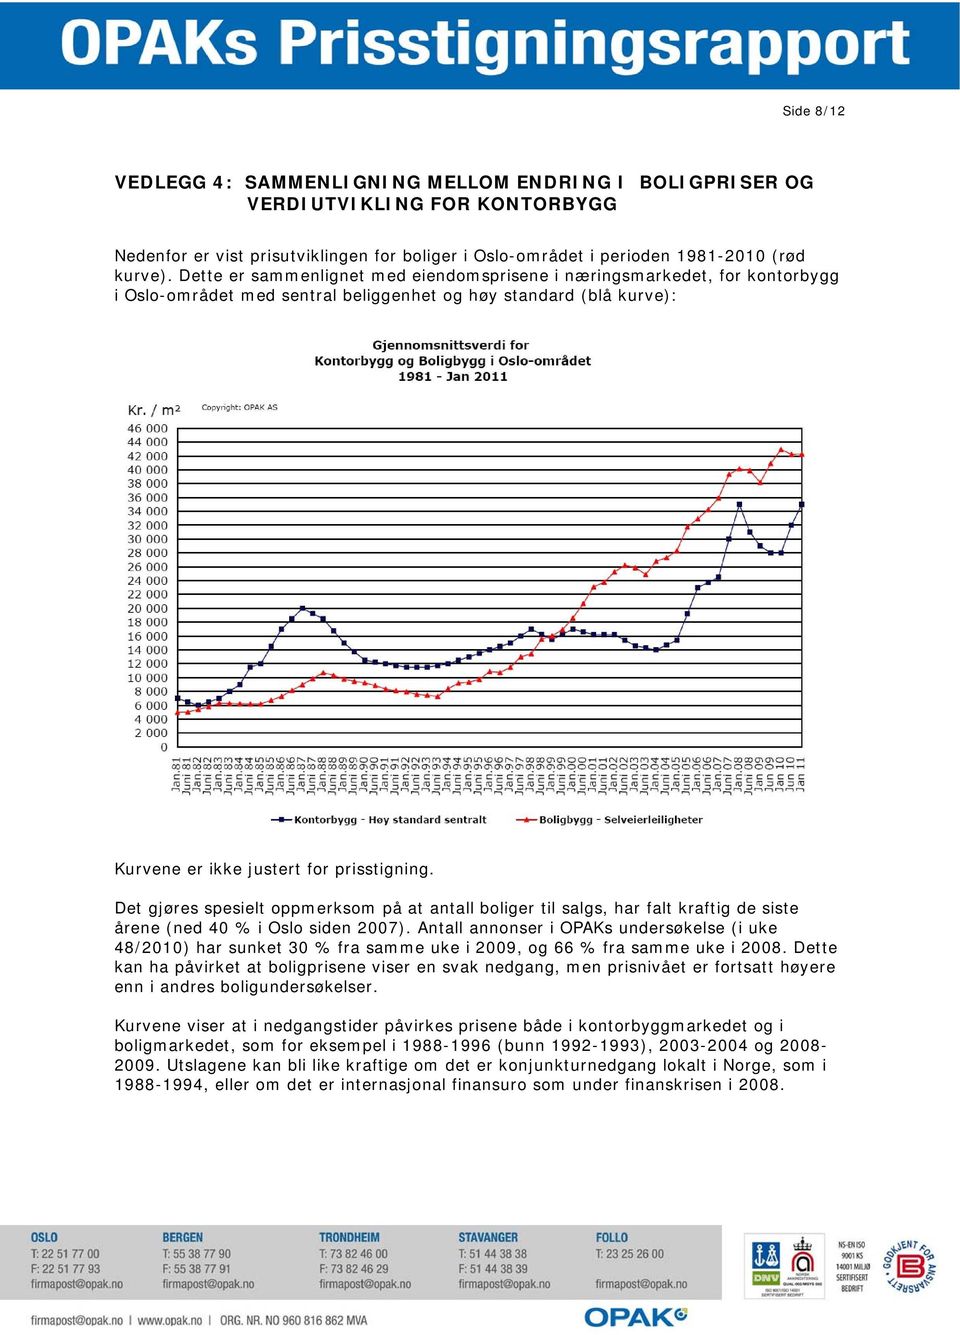 Det gjøres spesielt oppmerksom på at antall boliger til salgs, har falt kraftig de siste årene (ned 40 % i Oslo siden 2007).